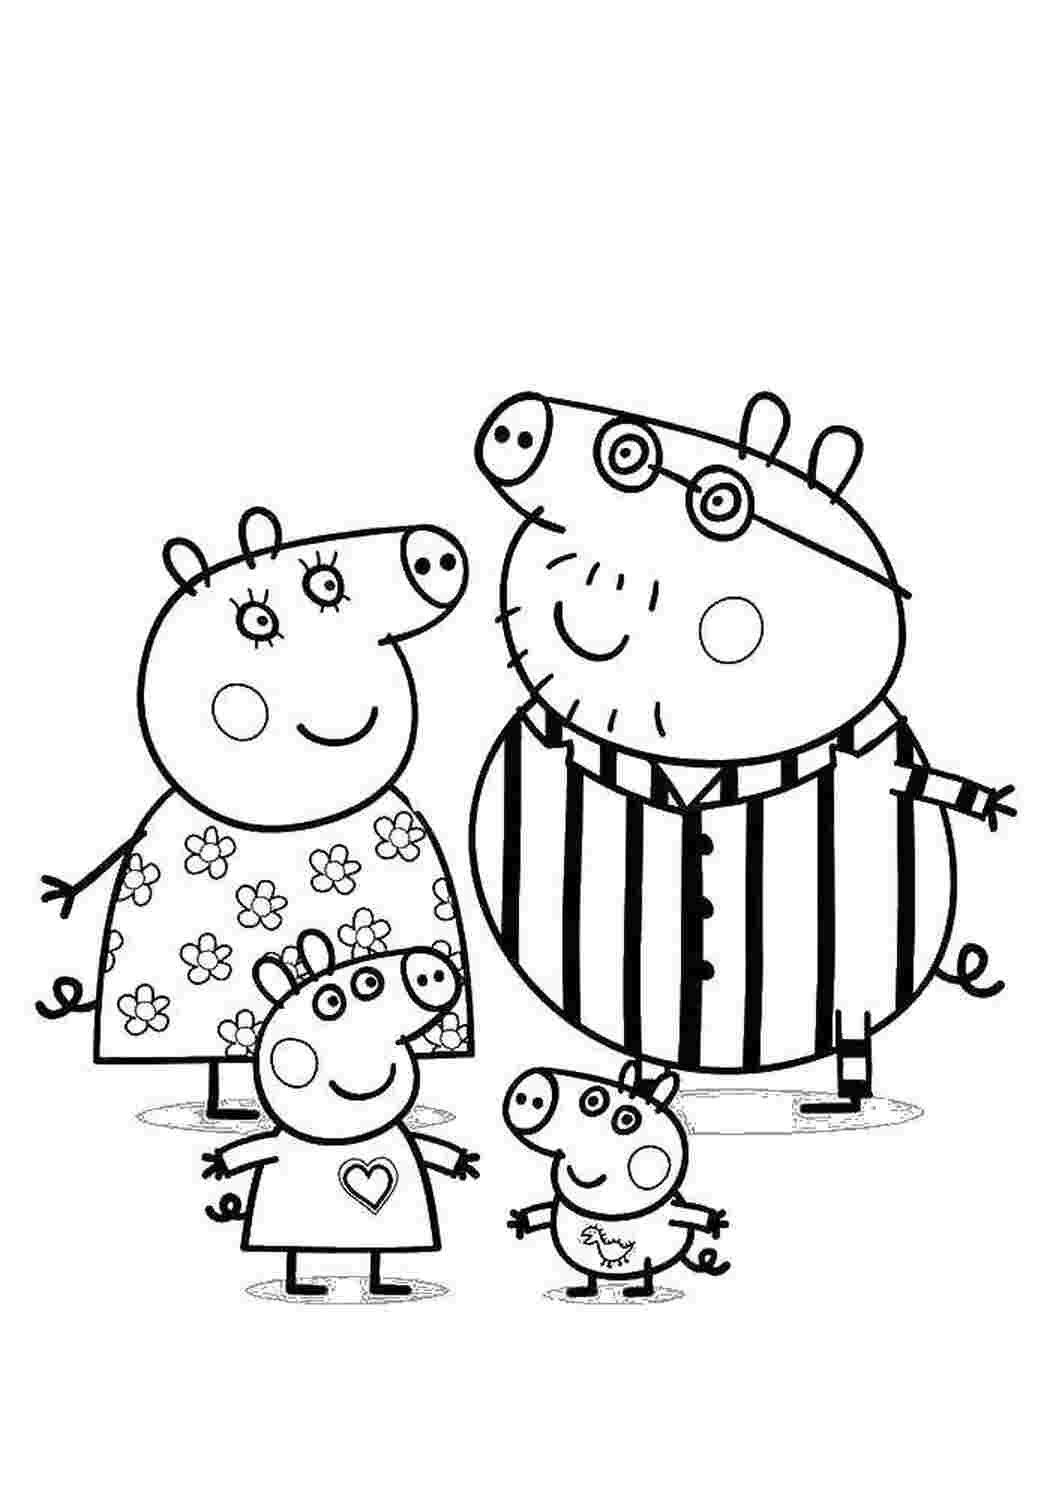 Раскраска Мама Свинка и дети, скачать и распечатать раскраску раздела Свинка Пеппа